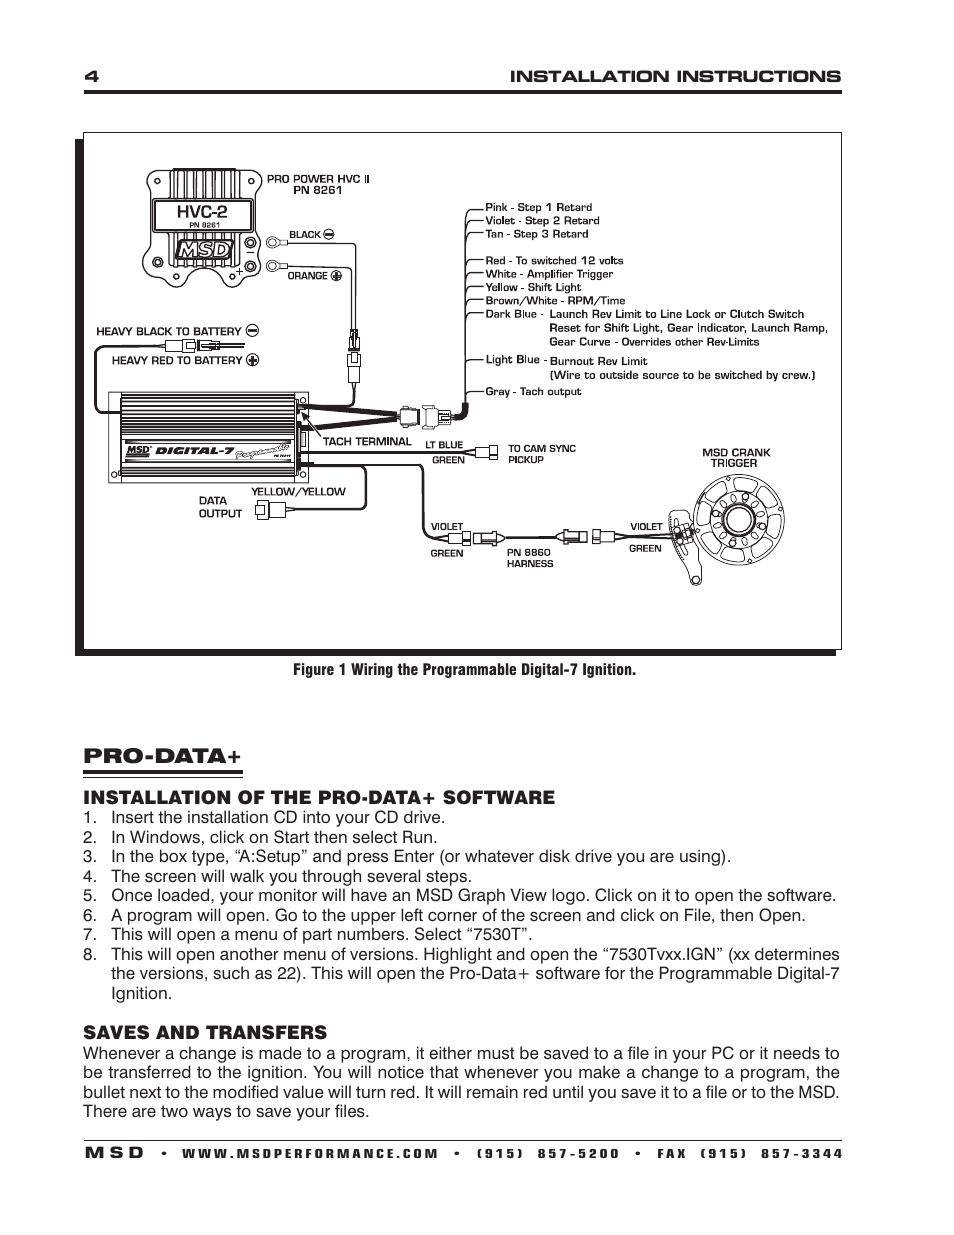 msd 7531 wiring diagram